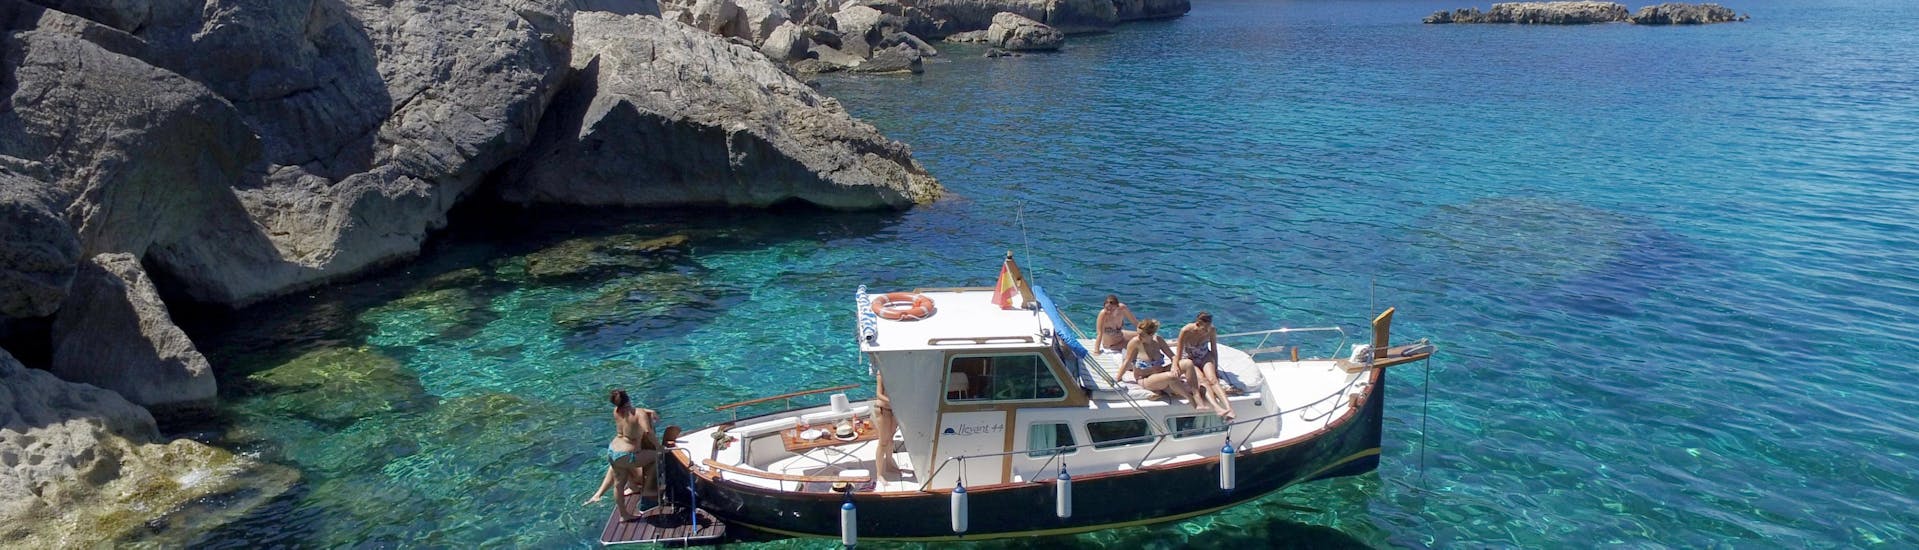 Un barco de Take Off Ibiza está en su viaje en barco privado a lo largo de la costa de Ibiza parado en las aguas cristalinas.